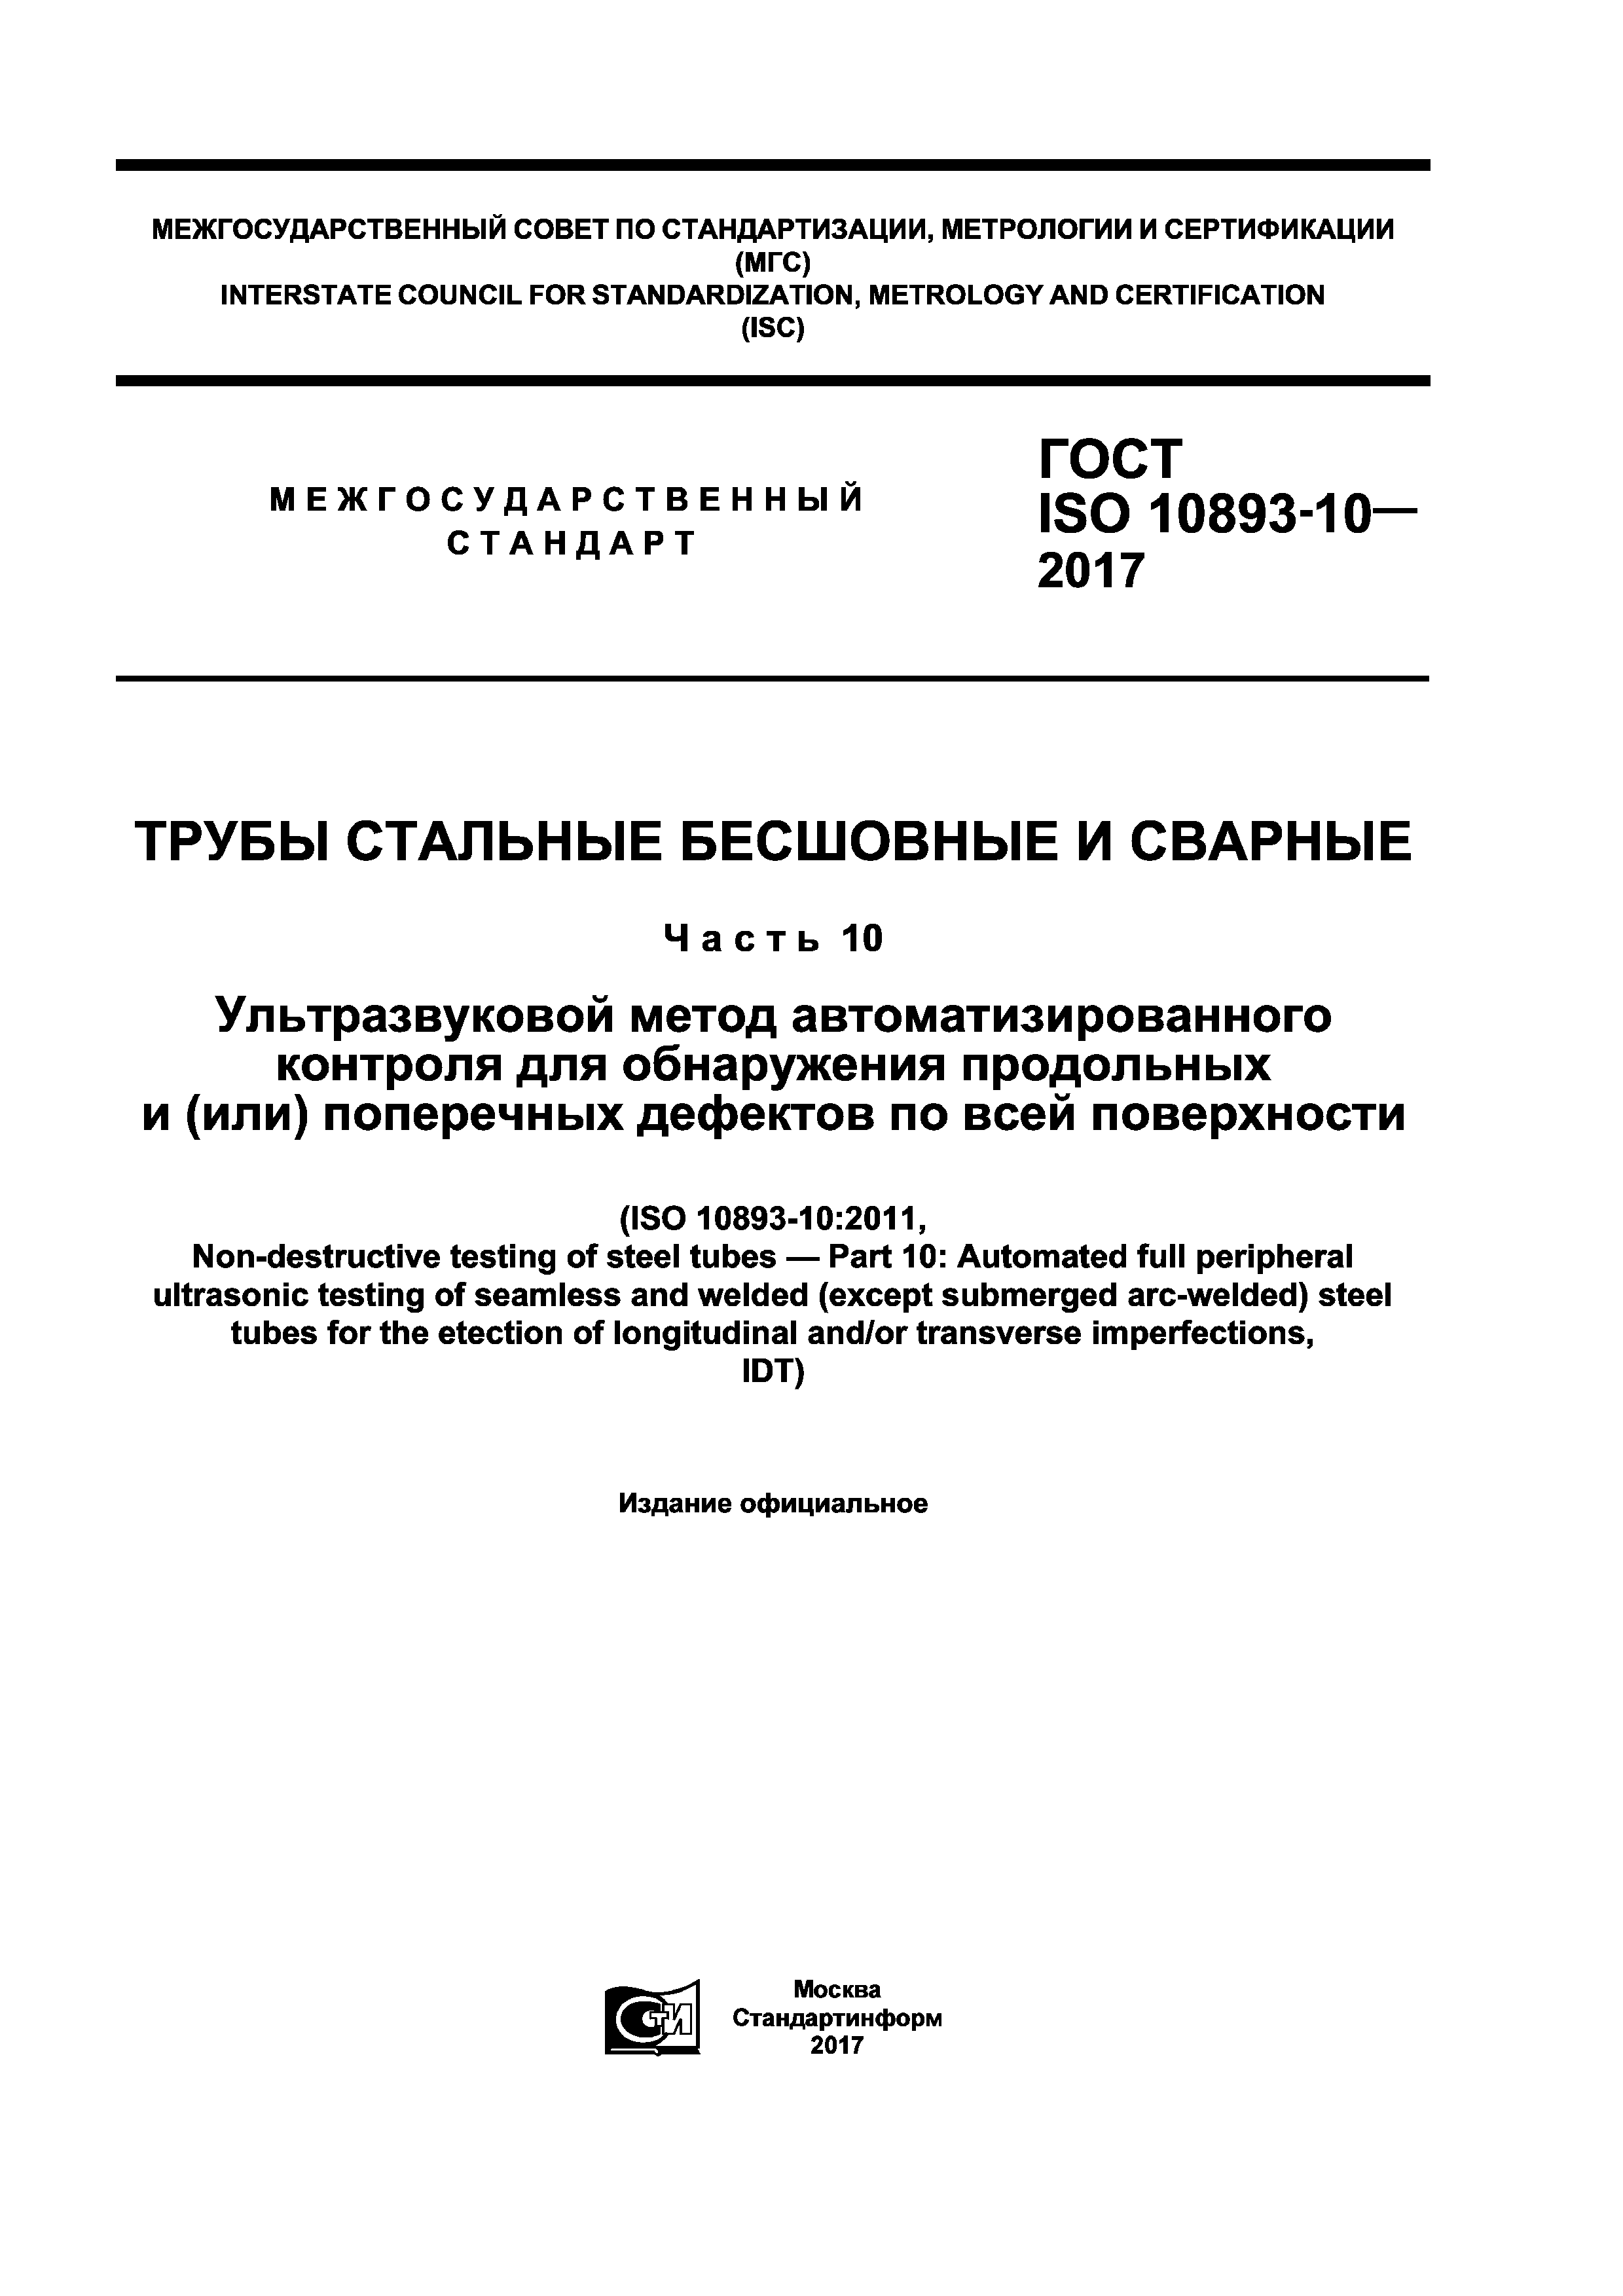 ГОСТ ISO 10893-10-2017